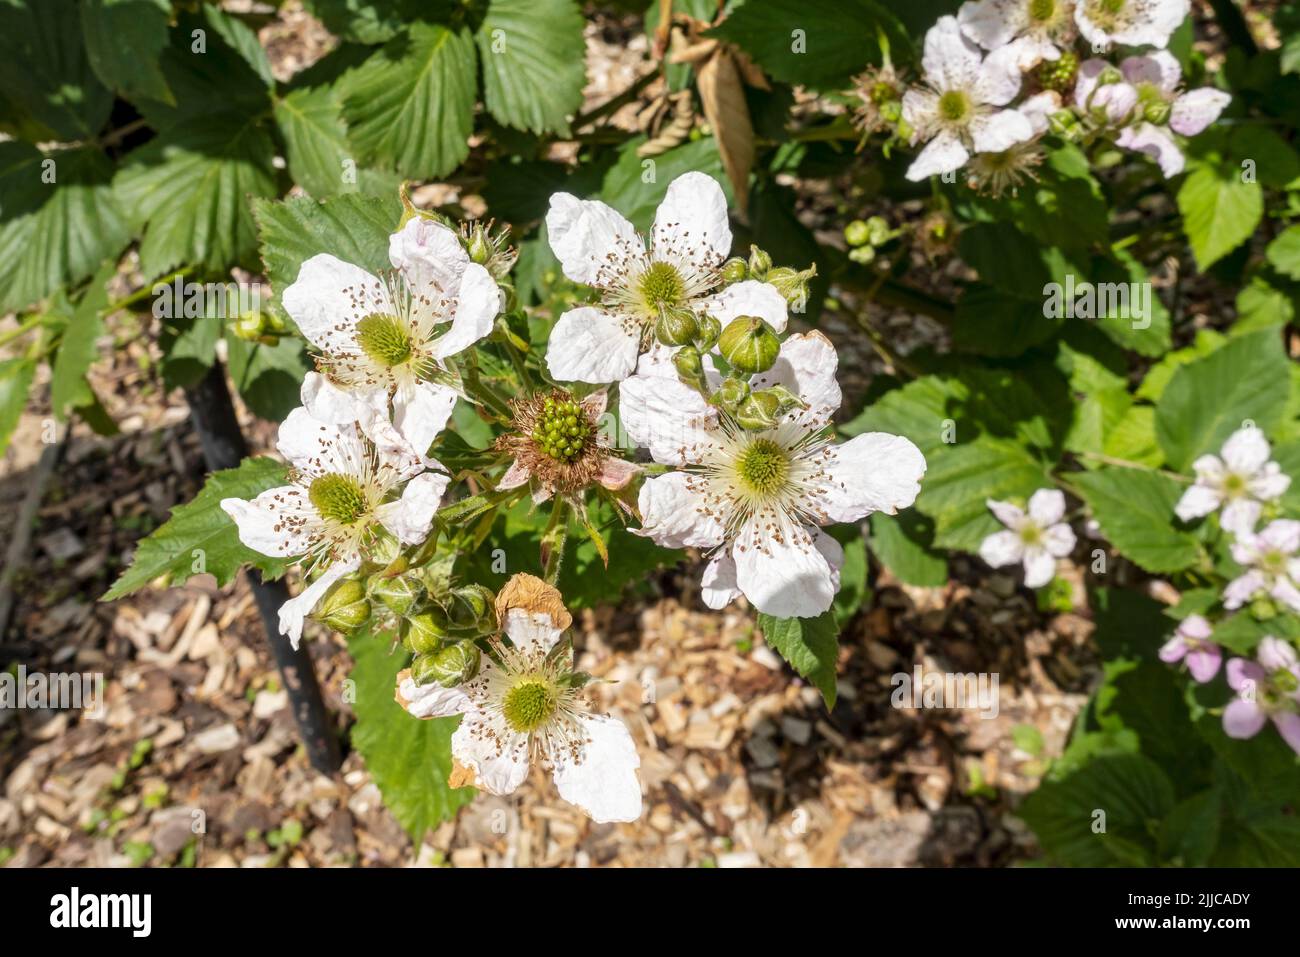 Primer plano de las flores del arbusto de blackberry 'Black Satin' moras Brambles planta flores florecientes en un jardín a principios de verano Inglaterra Reino Unido Gran Bretaña Foto de stock